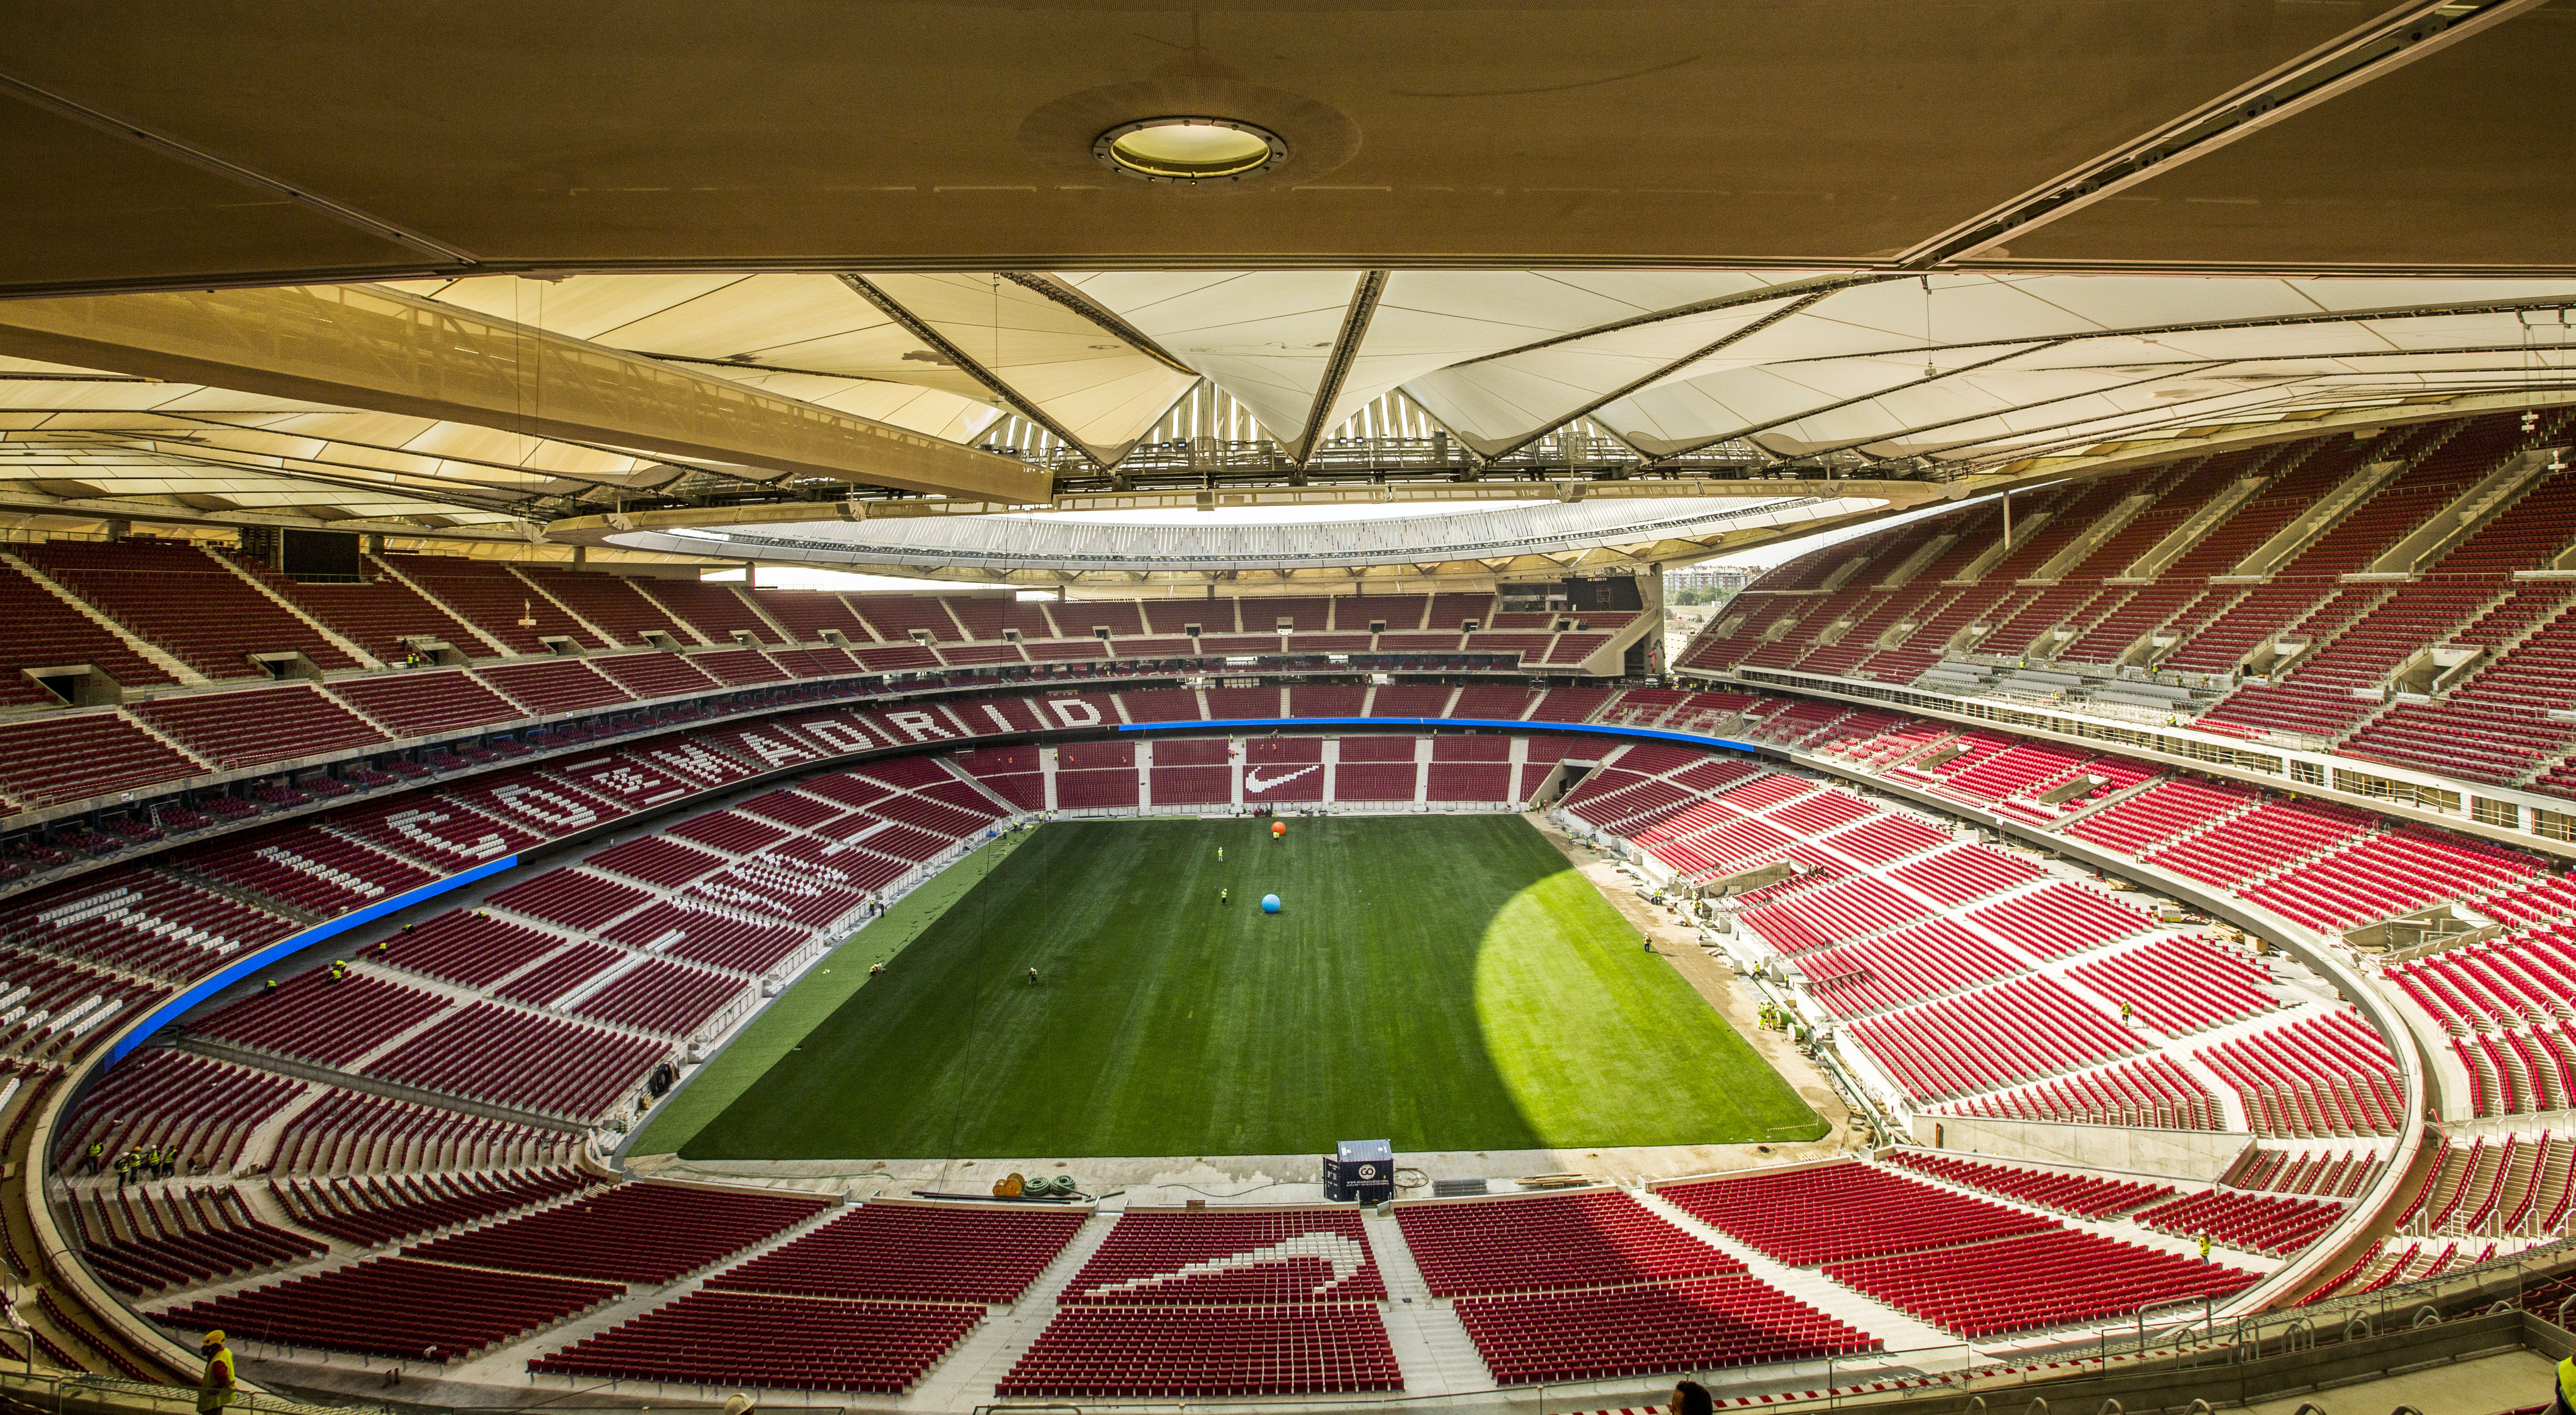 
			Estadio Wanda Metropolitano
			
		